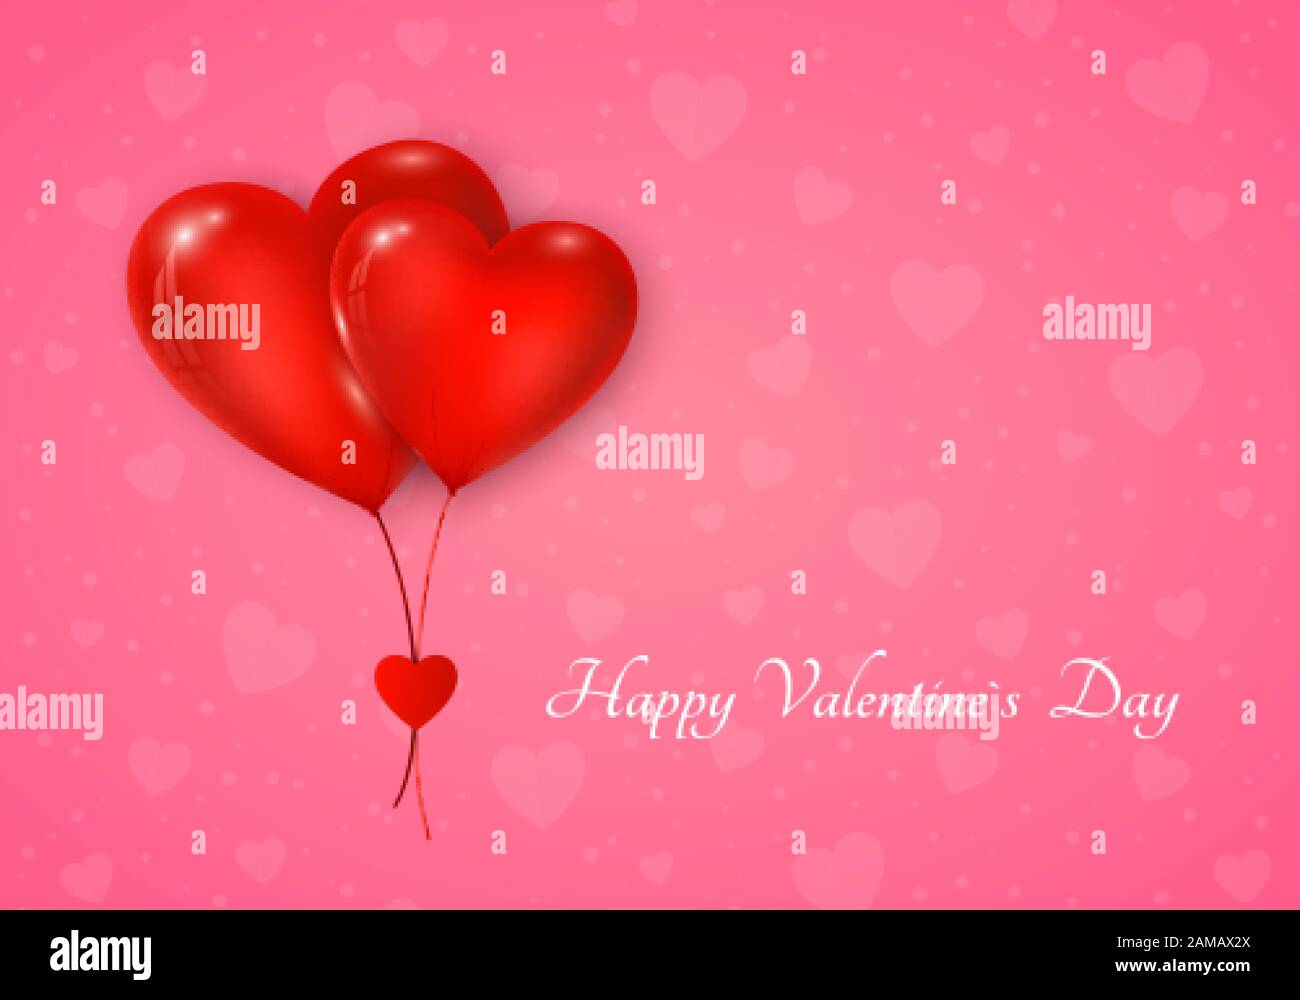 Ein paar rote Herzen Ballon mit Botschaft. Grußkarte zum Valentinstag auf pinkfarbenem Hintergrund. Vektorgrafiken Stock Vektor